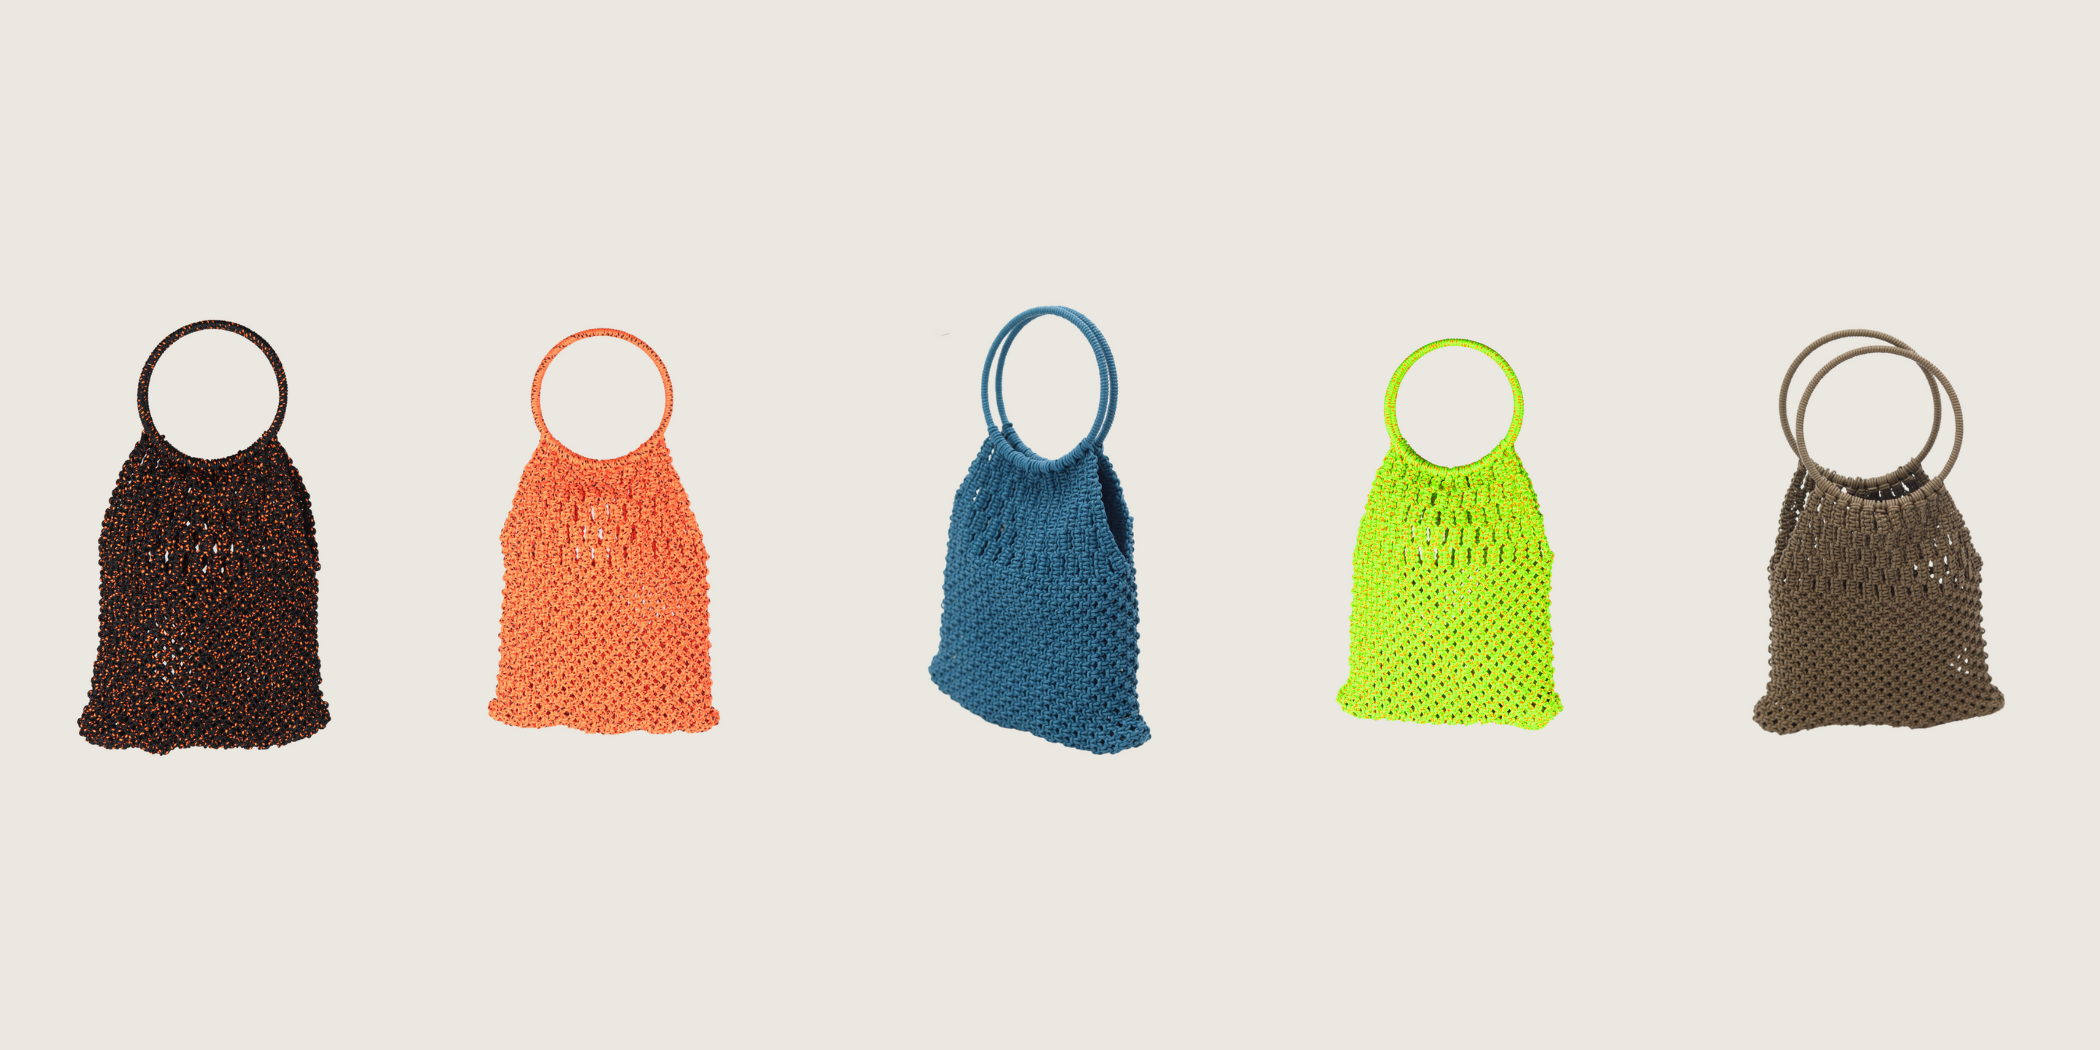 Maida: Artisanal handmade bags